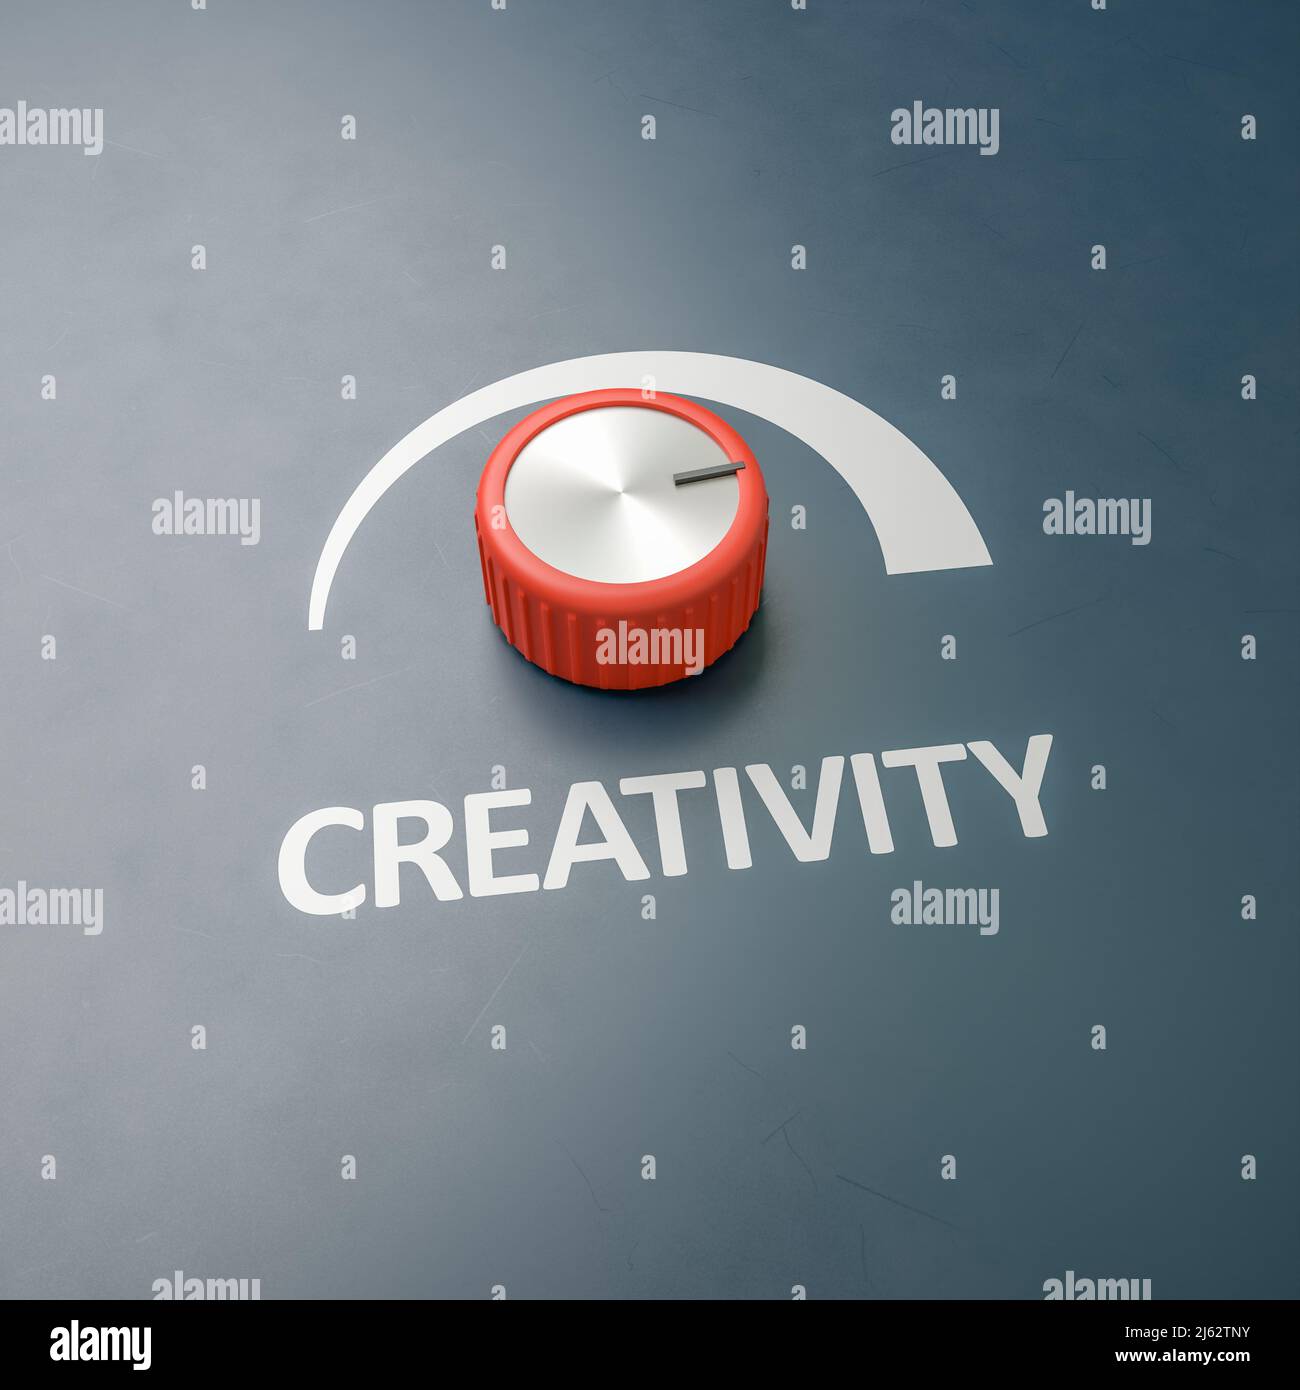 El mando rojo se encendió a escala completa con la palabra 'creatividad' como etiqueta - concepto de medidas para mejorar los procesos creativos. Copie el espacio alrededor para mejorar Foto de stock